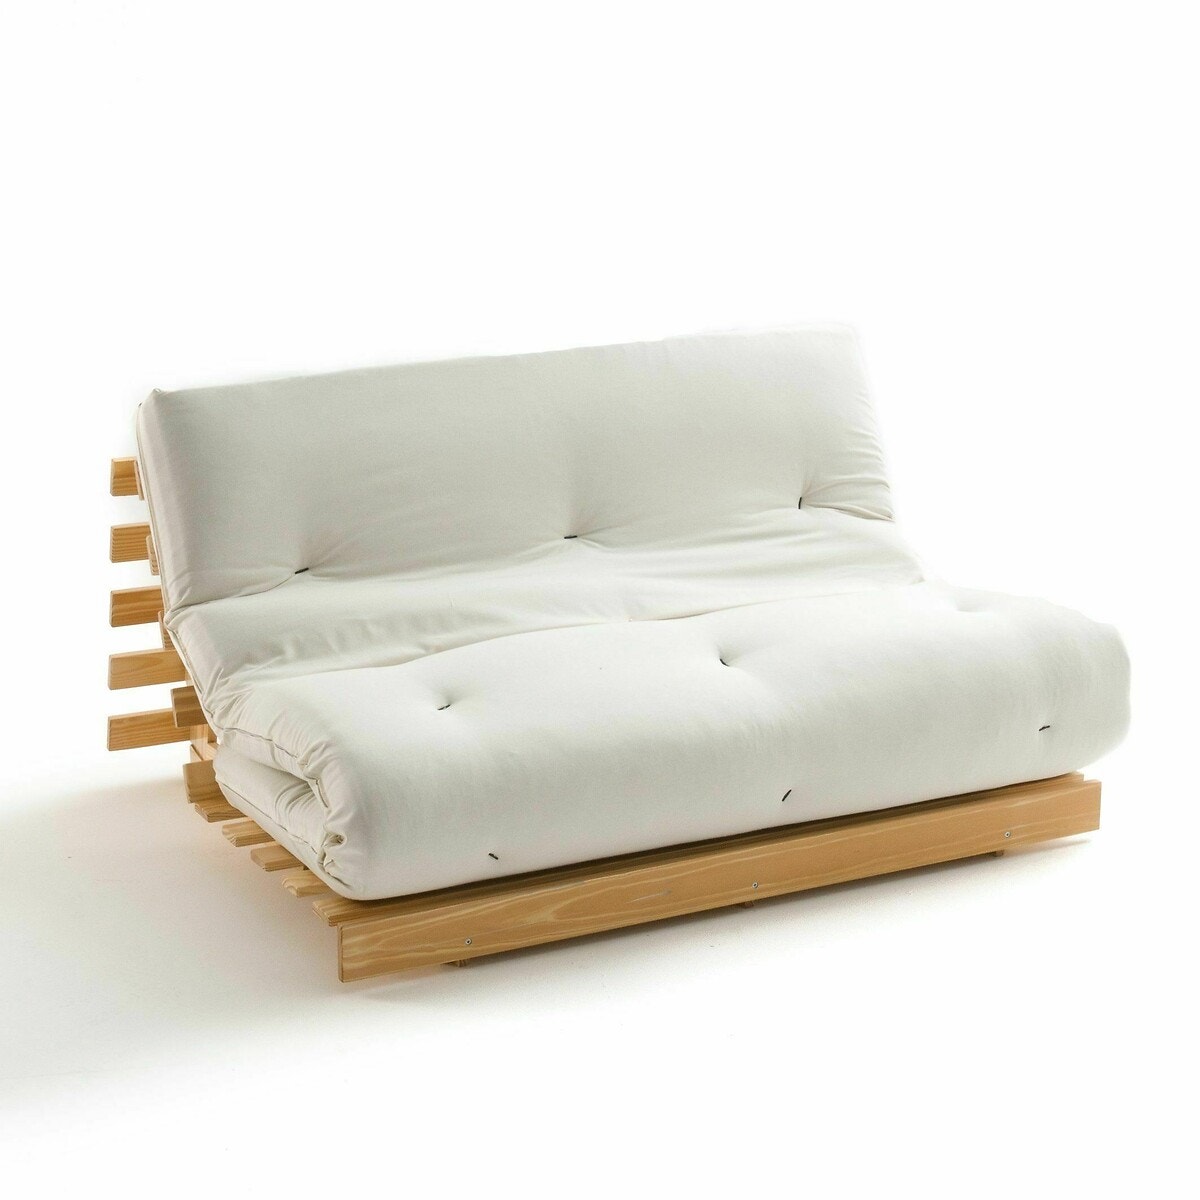 Σπίτι > Κλινοσκεπάσματα > Στρώματα > Στρώματα latex Στρώμα futon με αφρό για τον καναπέ THAÏ 90x190 cm